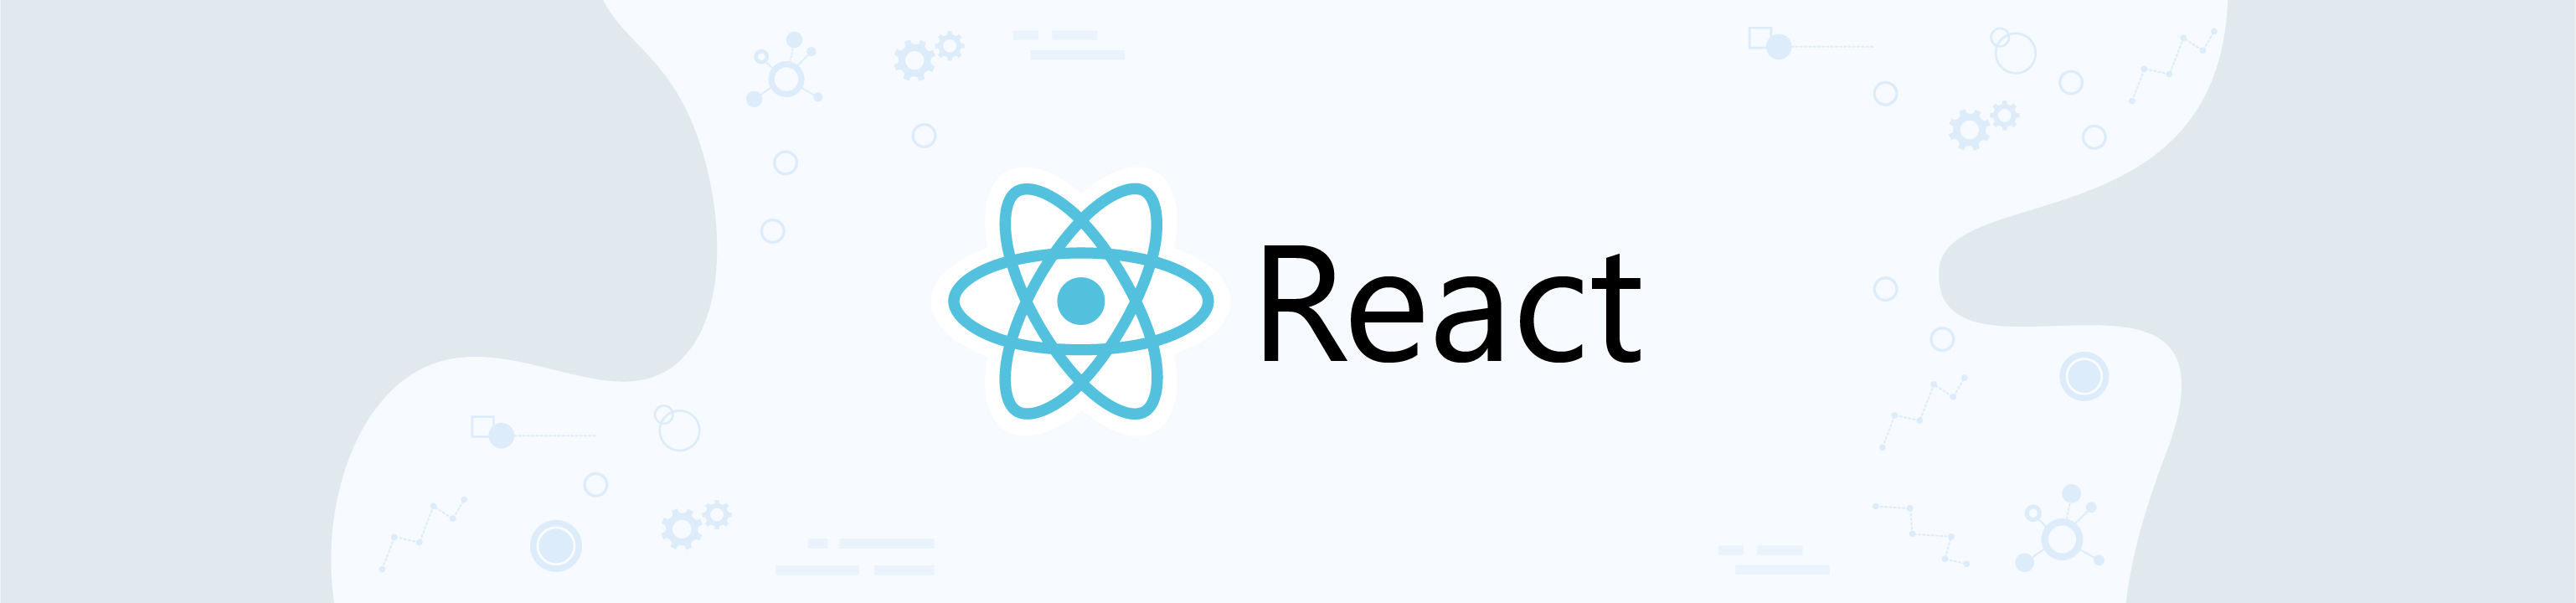 Image — React — JS framework